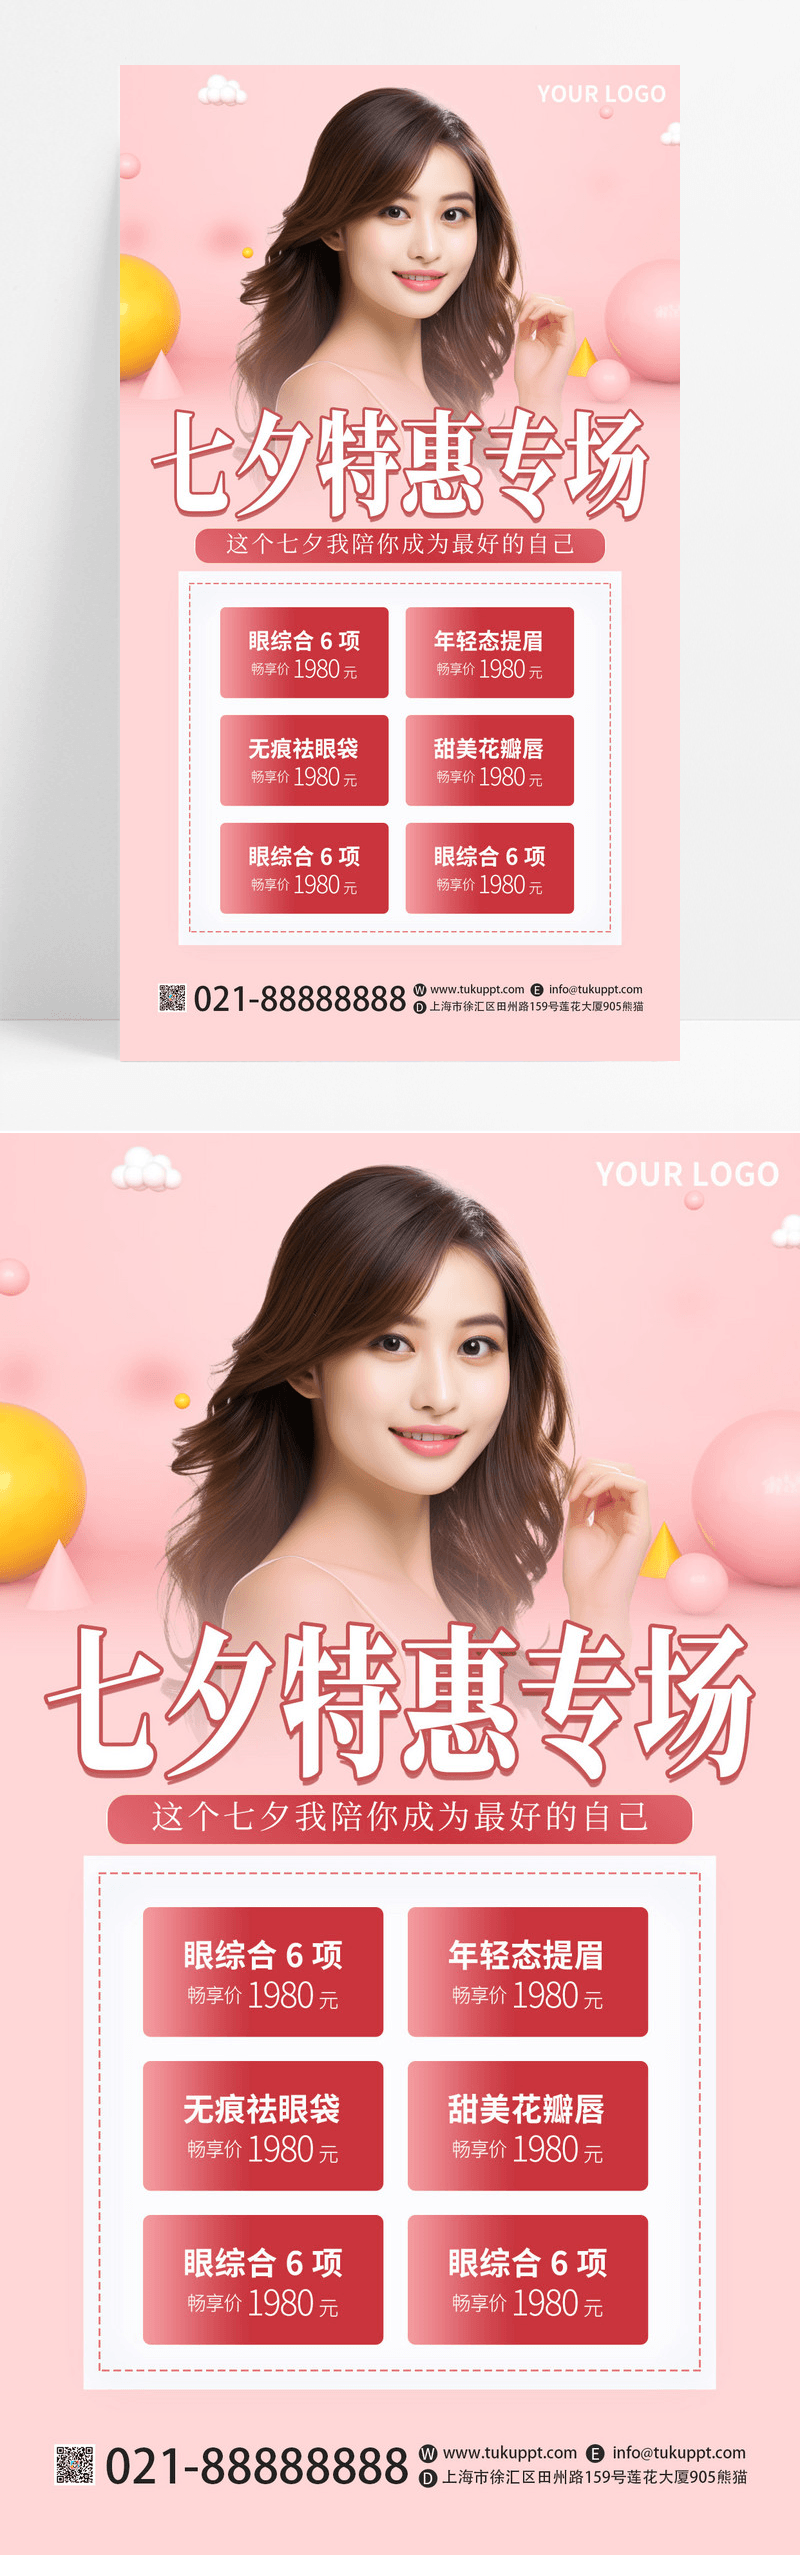 粉红色大气简约美容美肤AI摄影图七夕特惠专场活动宣传手海报